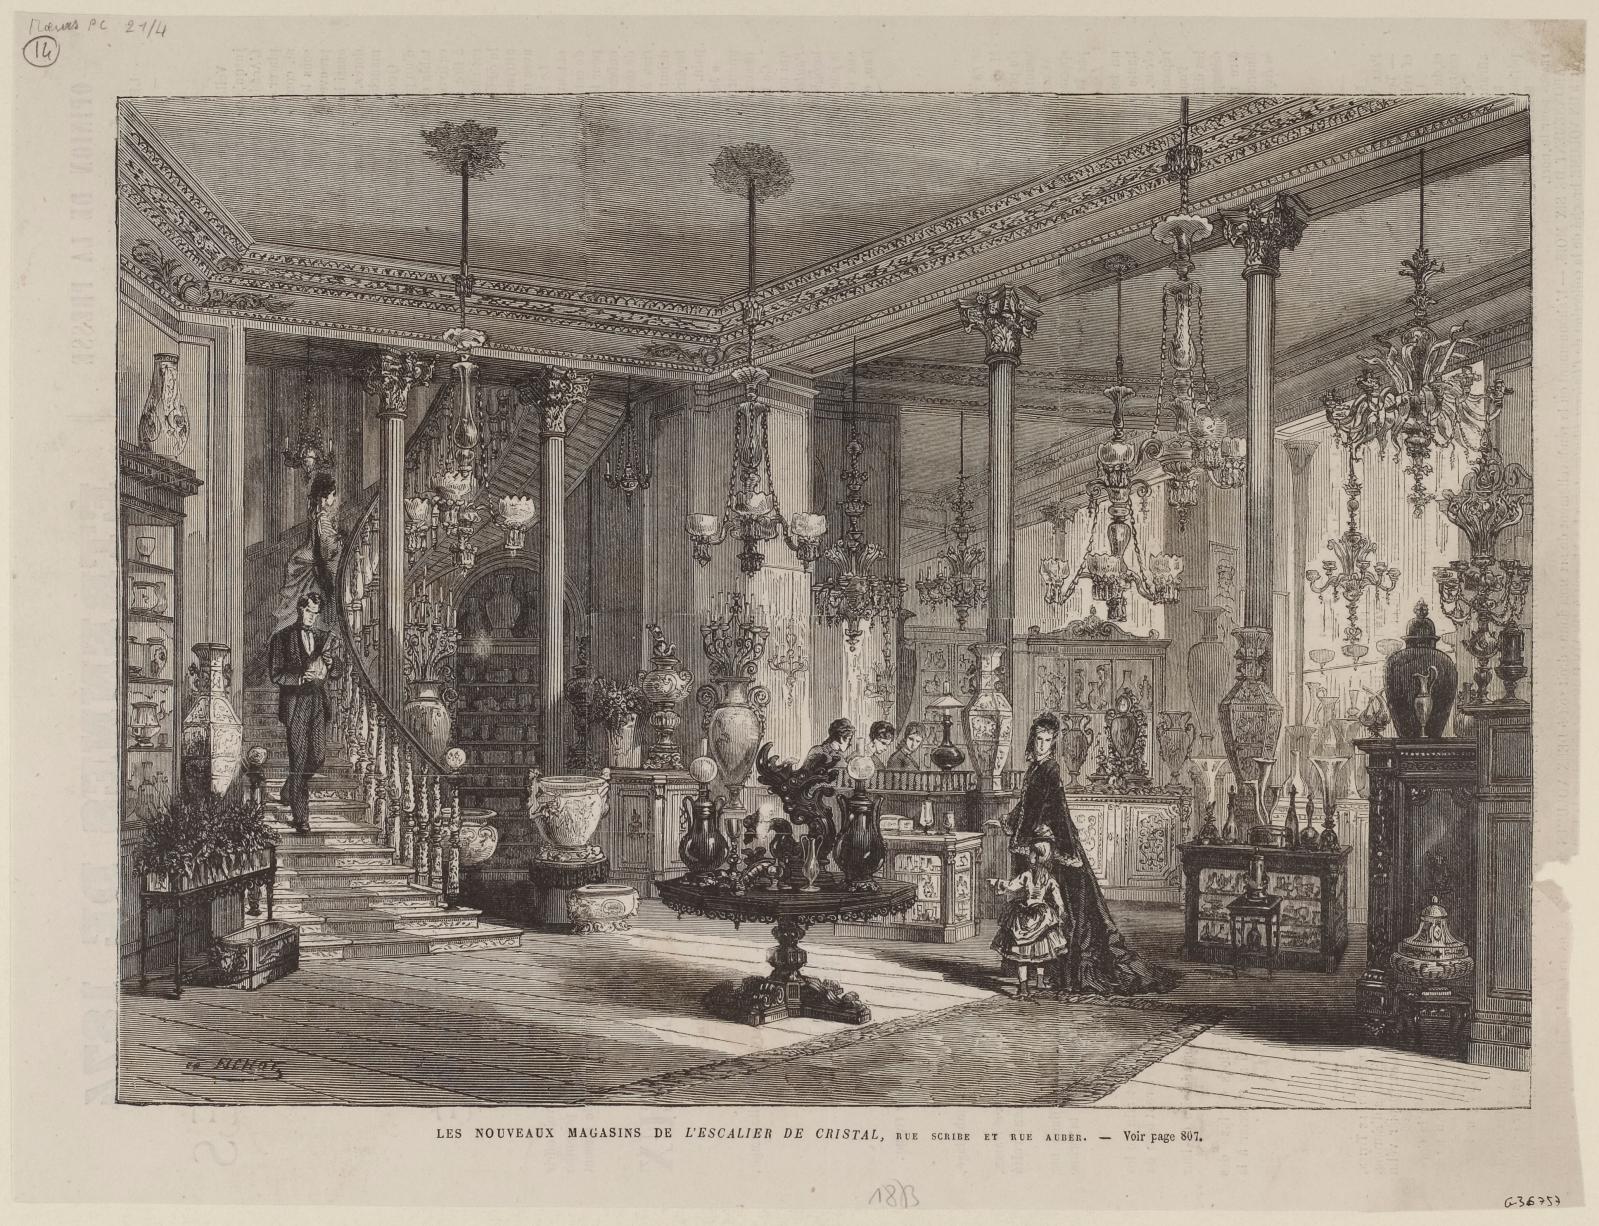 Michel Charles Fichot (1817-1903), Les Nouveaux Magasins de l’Escalier de cristal, rue Scribe et rue Auber, paru dans L’Illustration en 18